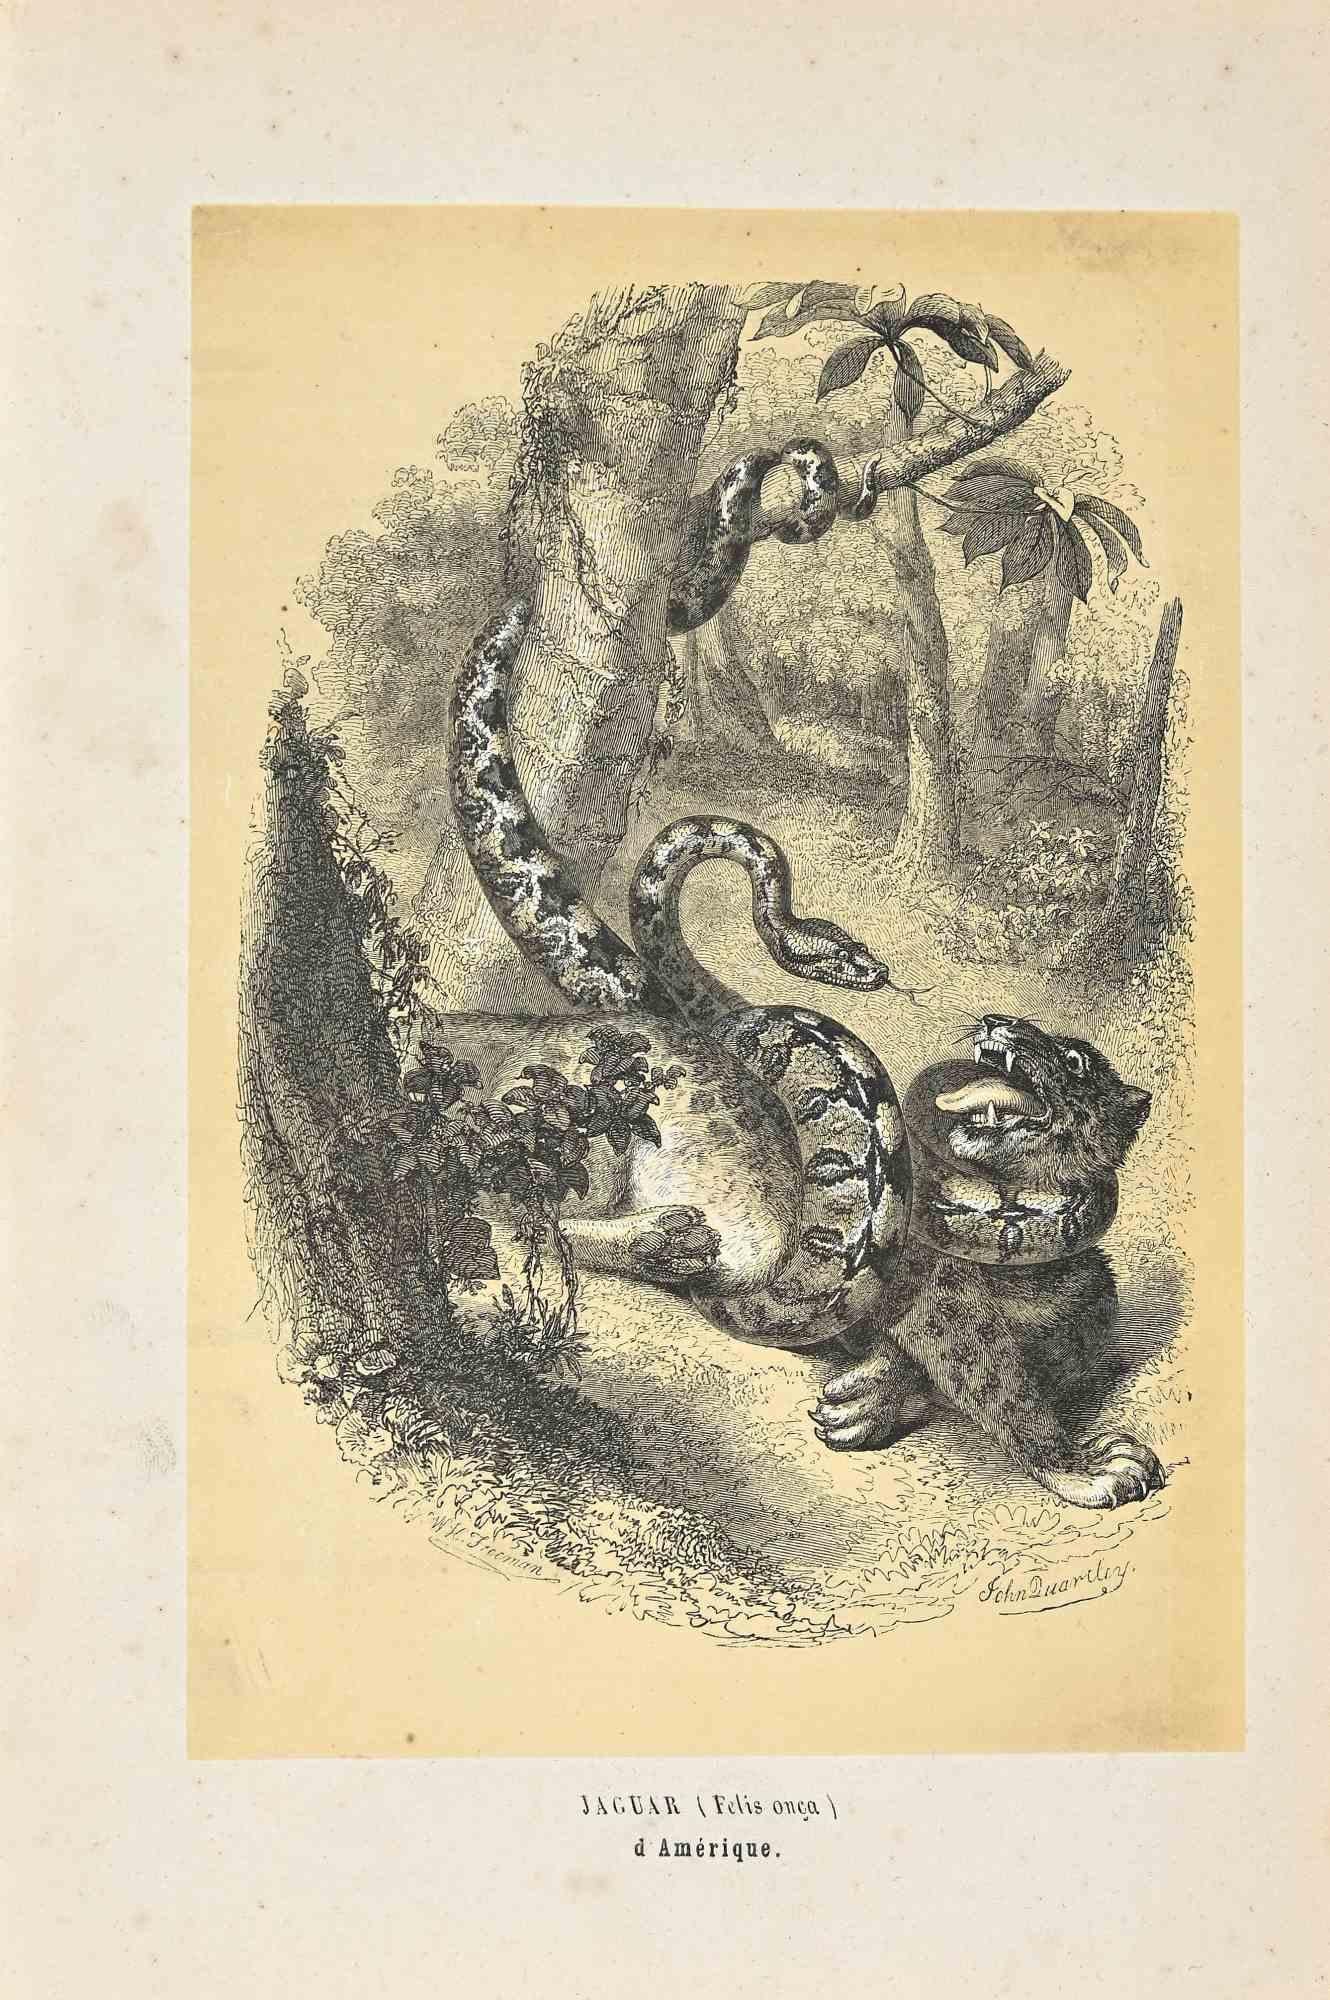 Jaguar ist eine Originallithografie auf elfenbeinfarbenem Papier, die von Paul Gervais (1816-1879) geschaffen wurde. Das Kunstwerk stammt aus der Serie "Les Trois Règnes de la Nature" und wurde 1854 veröffentlicht.

Guter Zustand bis auf einige